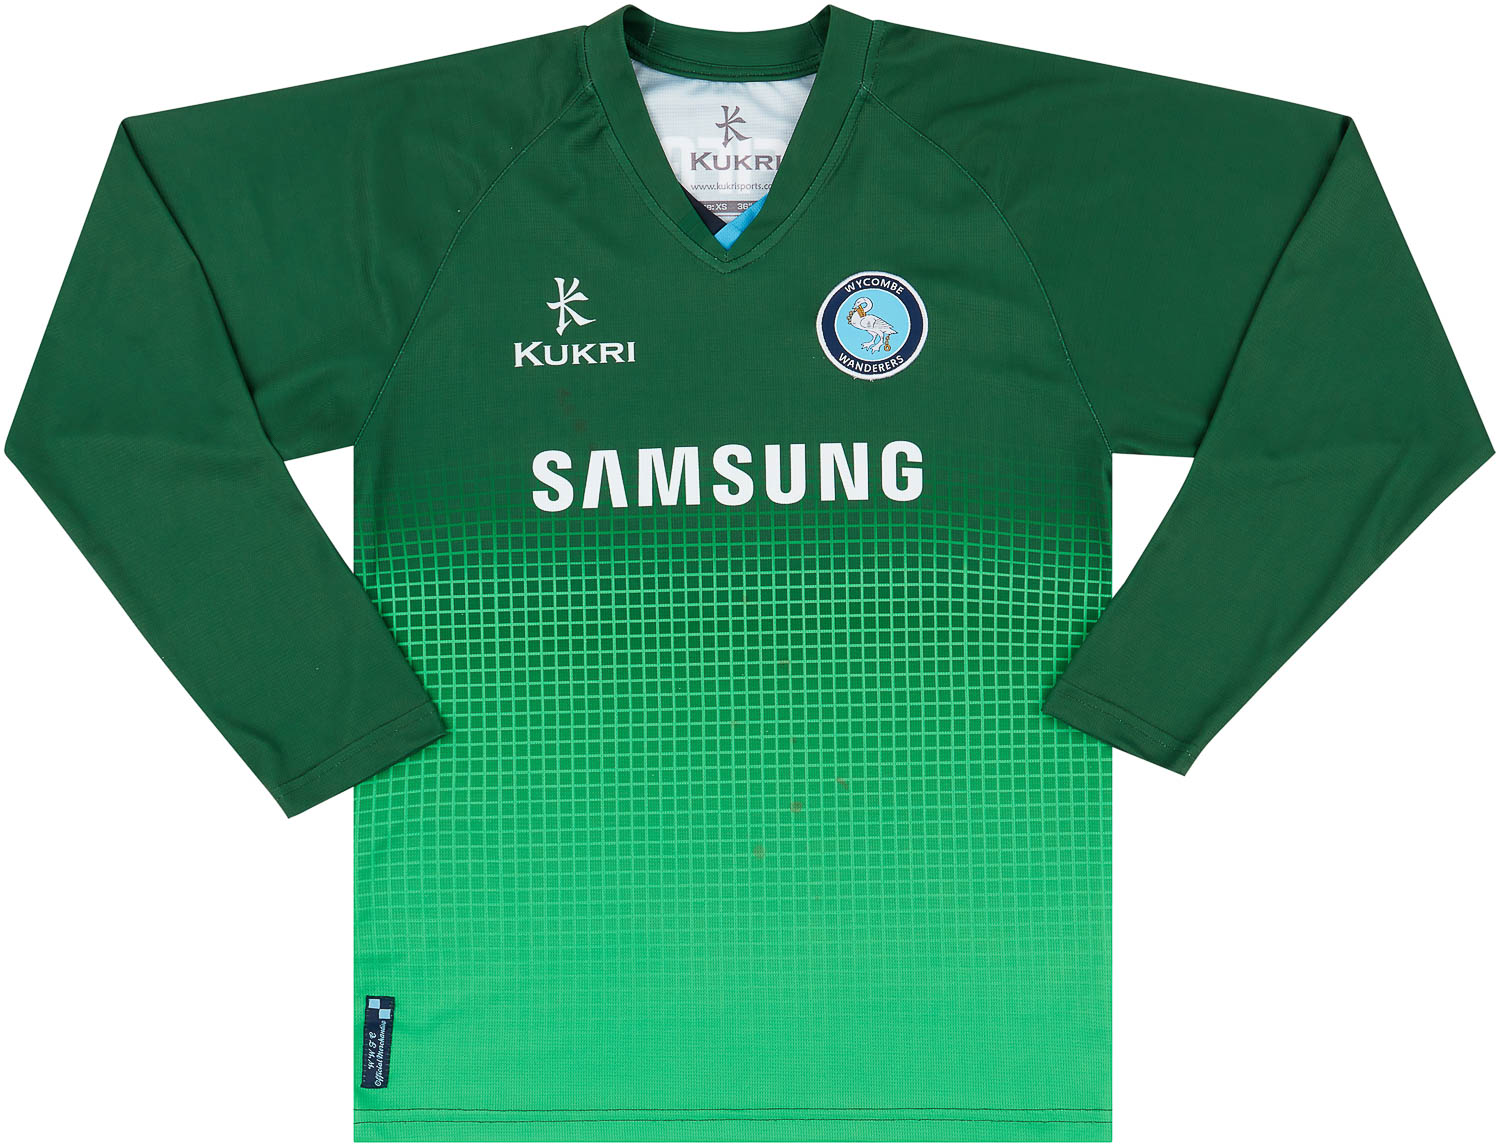 Wycombe Wanderers  Torwart Shirt (Original)